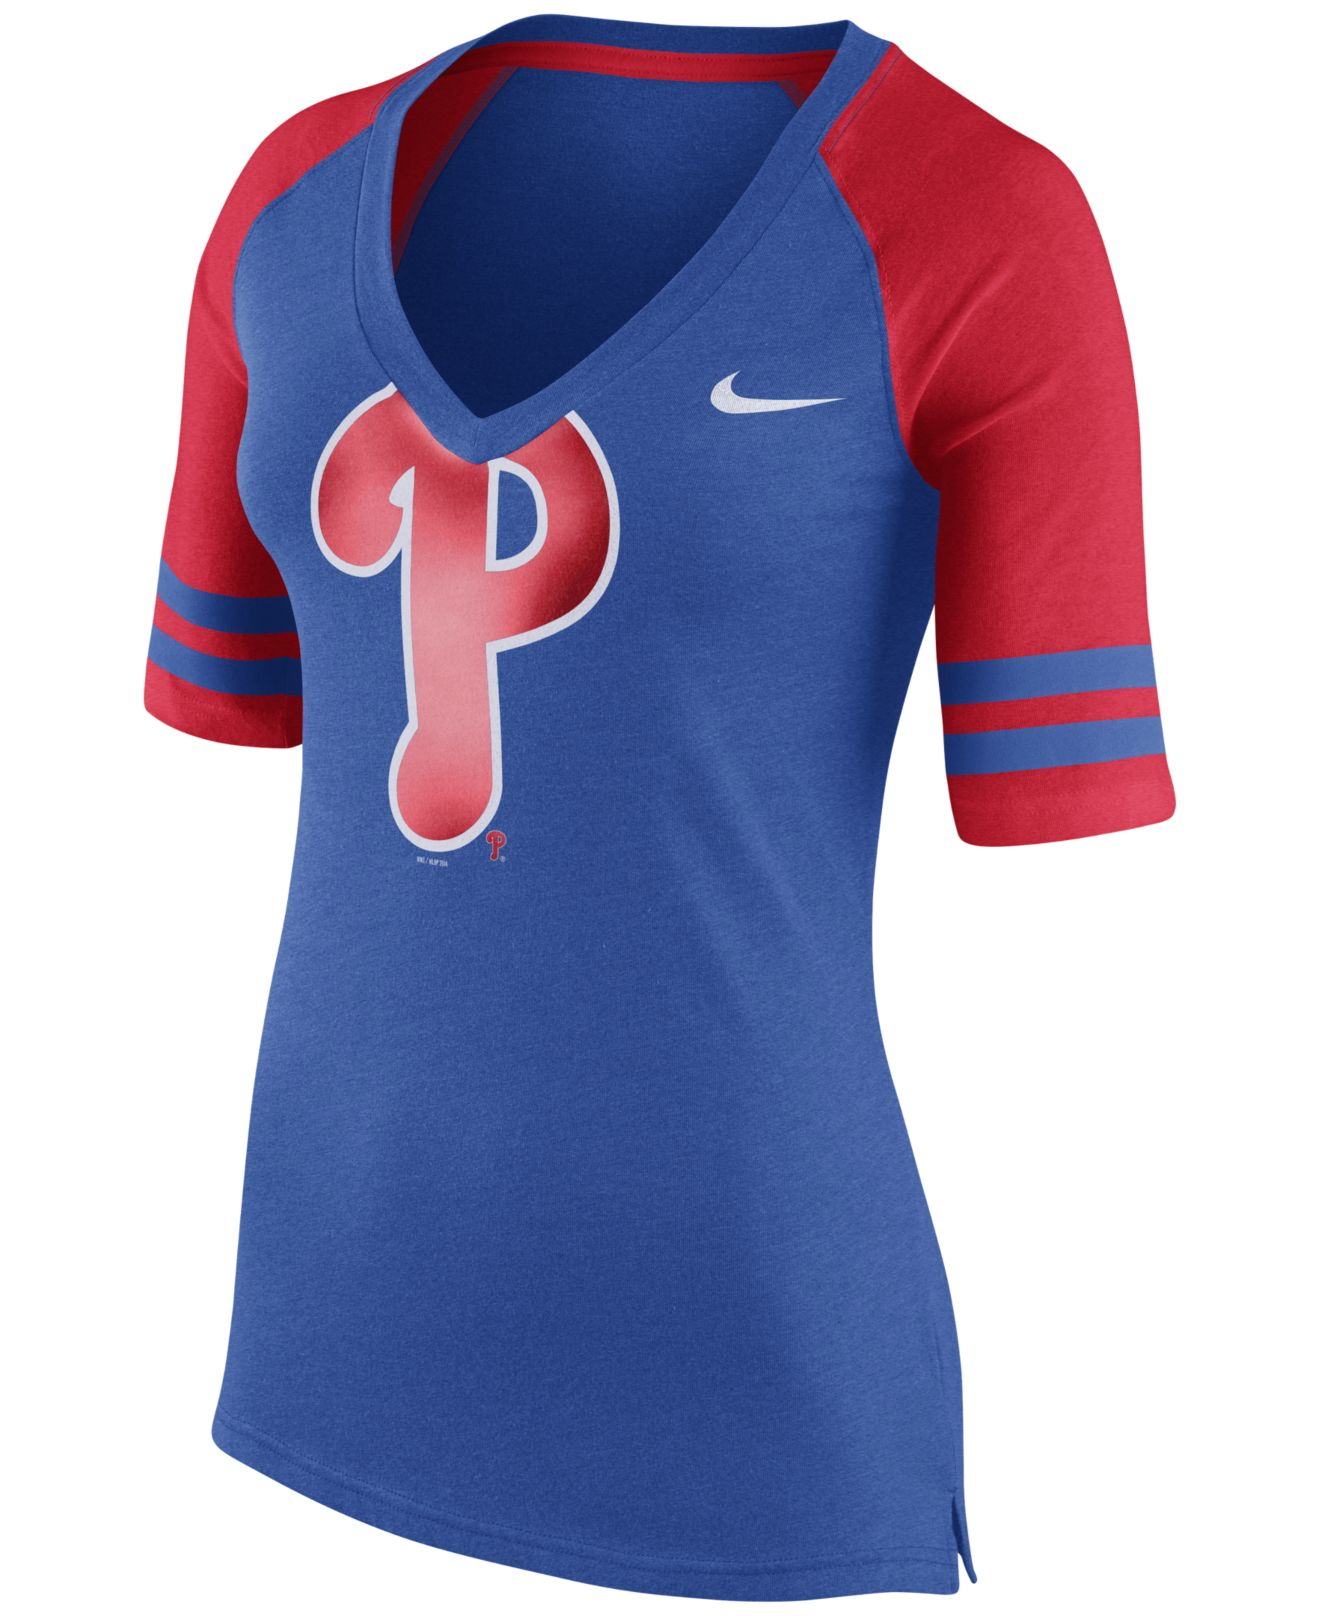 Lyst - Nike Women's Philadelphia Phillies Logo Fan Top T-shirt in Blue